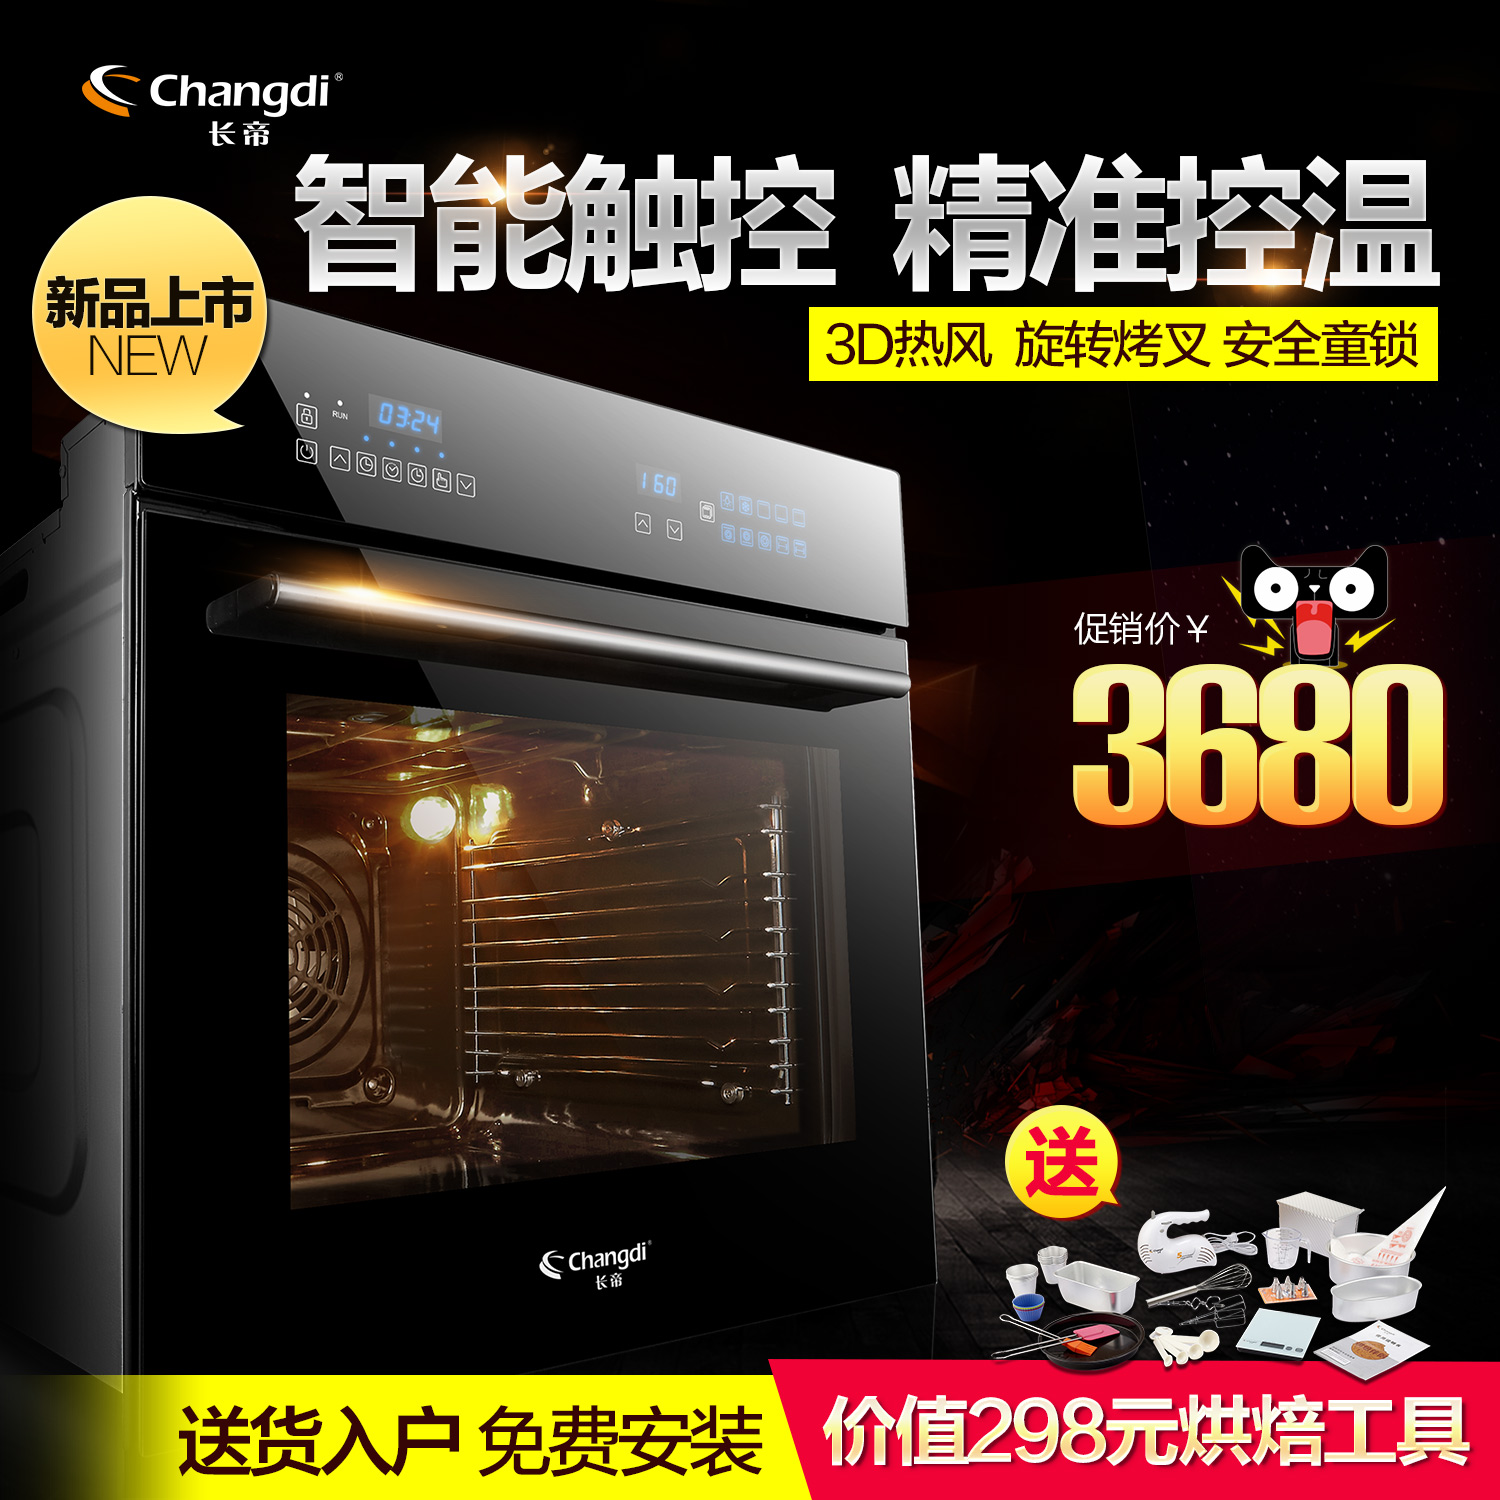 长帝 BN65-52E 嵌入式烤箱 家用大容量65L内嵌烘焙电烤箱 多功能折扣优惠信息